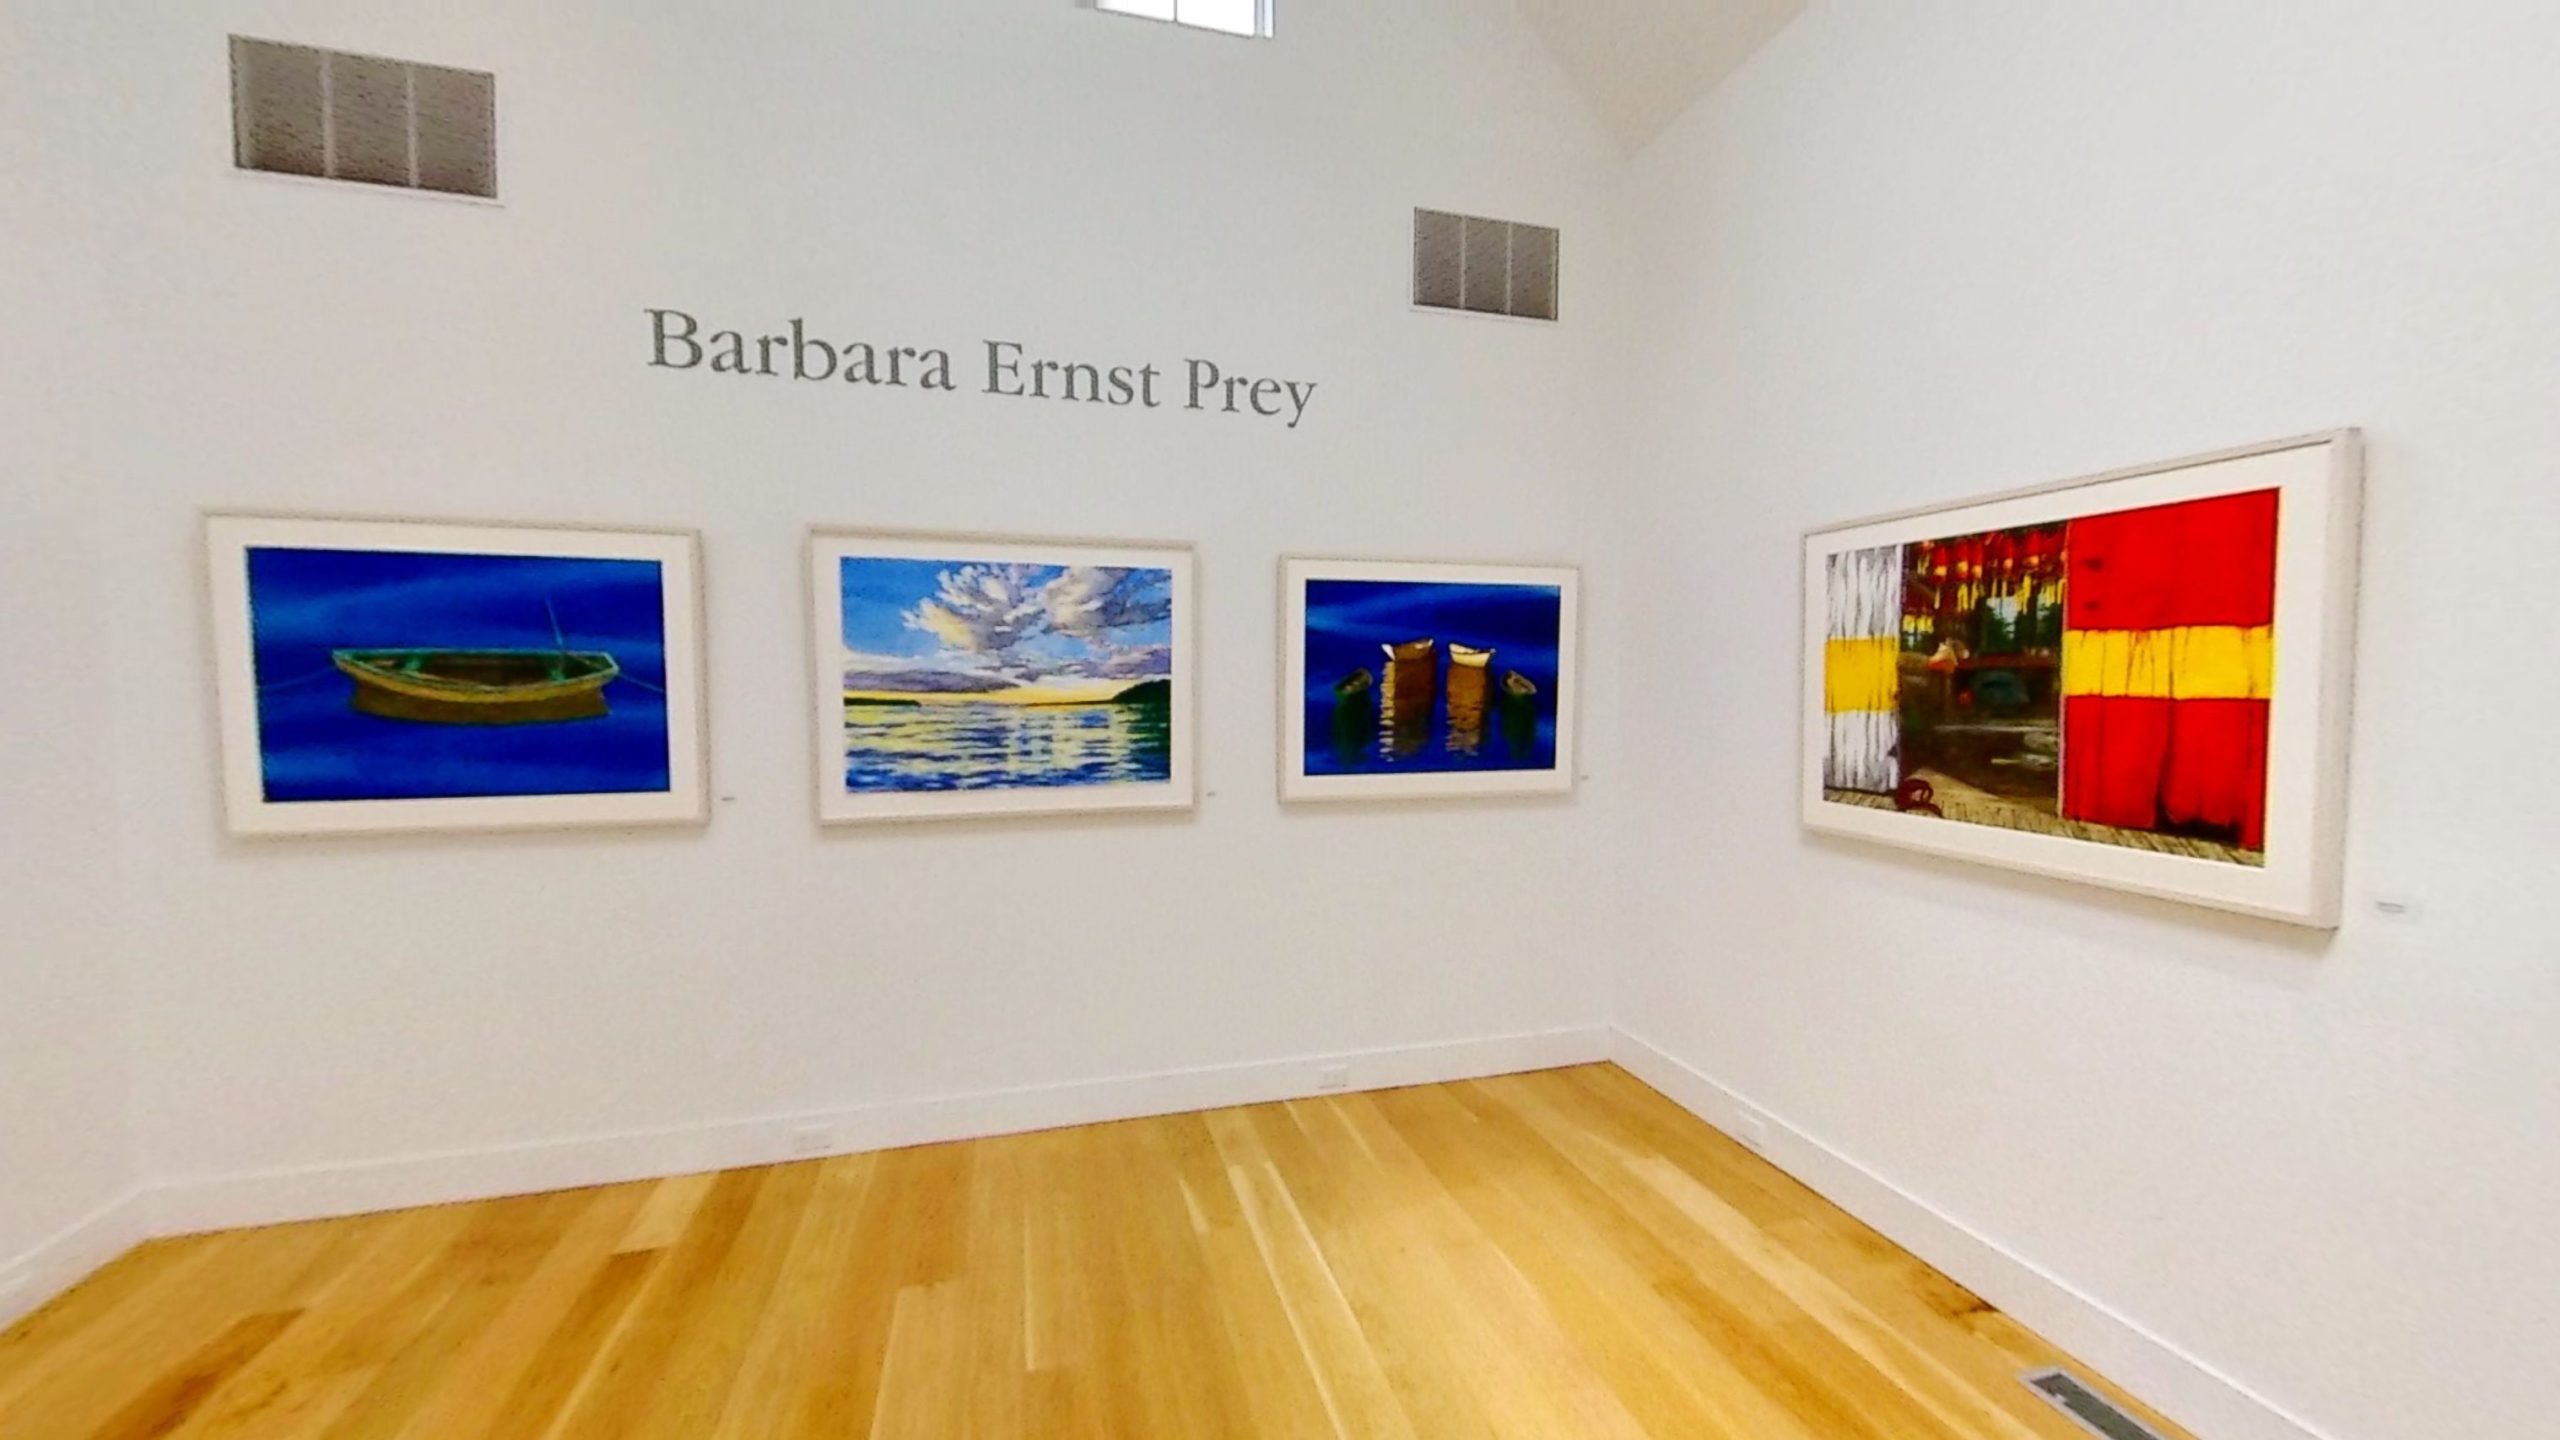 Barbara Ernst Prey North Gallery exhibition wide angle shot